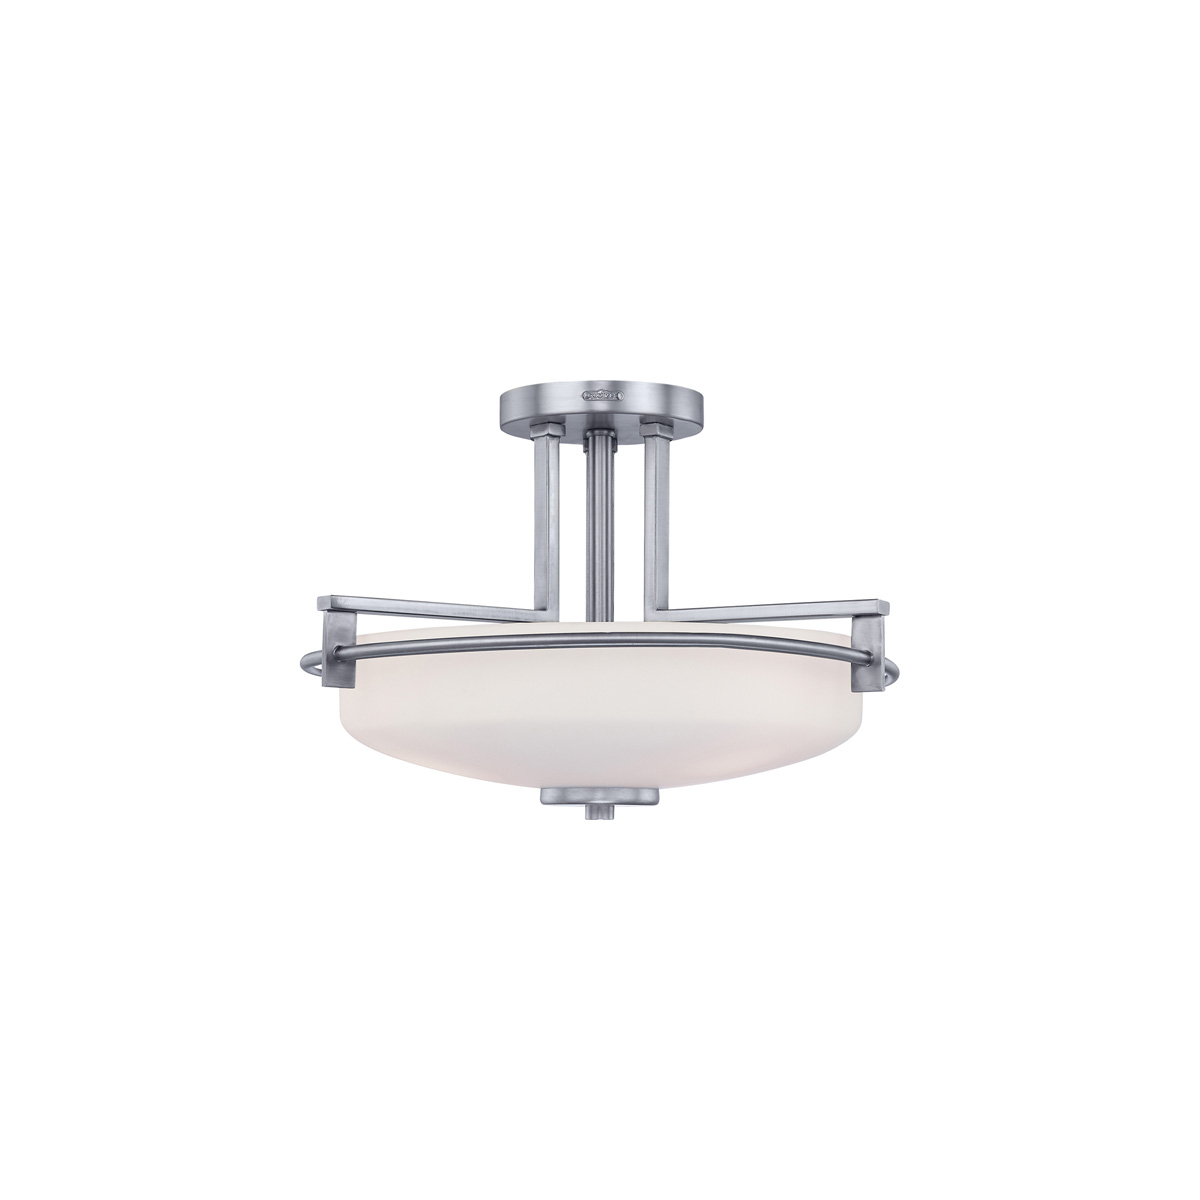 Потолочный светильник для ванных комнат QZ-TAYLOR-SFBATH, Потолочные светильники для ванных комнат | Металл/Стекло | Хром/Никель Белый/Бежевый.